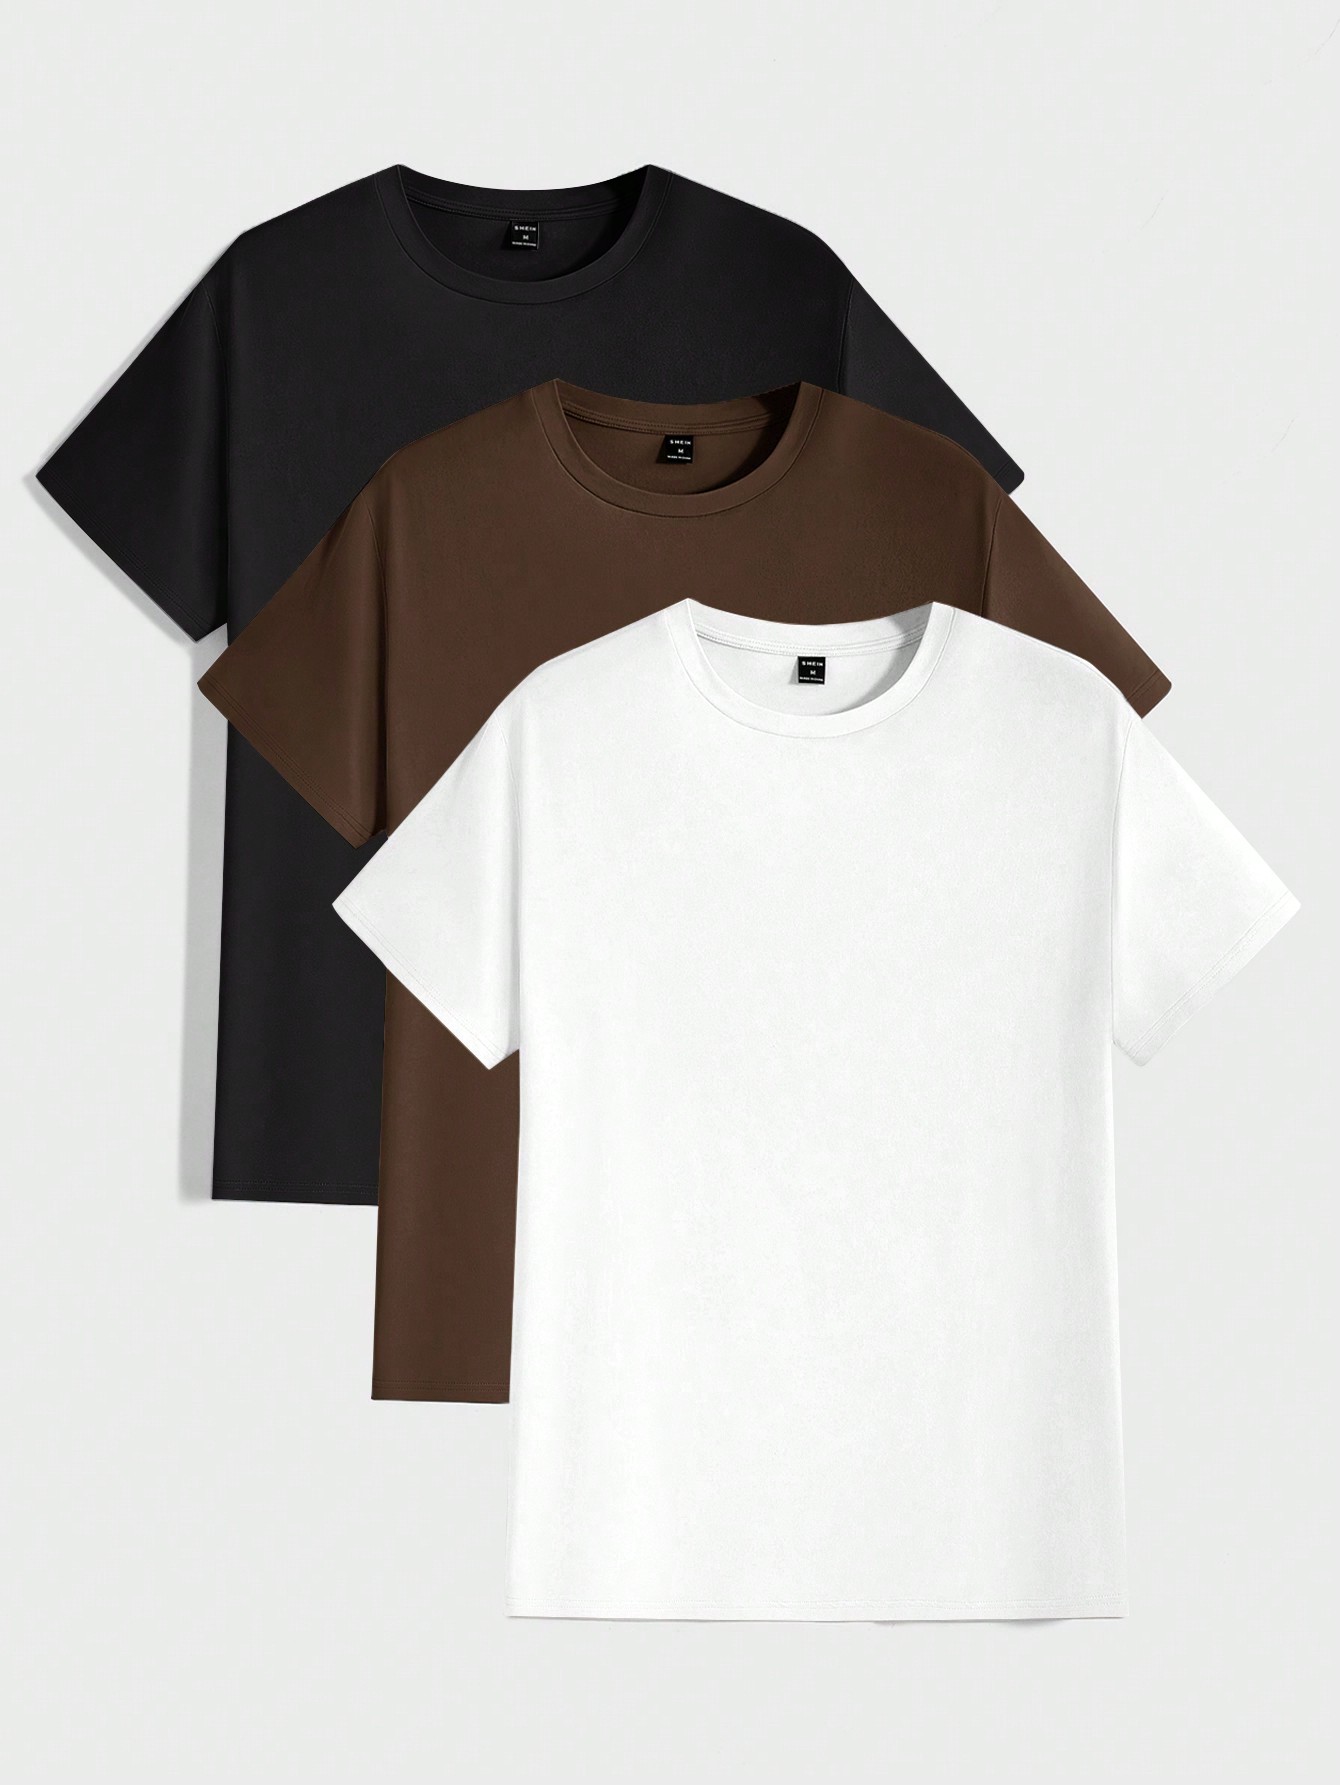 Мужская повседневная однотонная футболка с круглым вырезом и короткими рукавами Manfinity Basics, коричневый женская свободная футболка однотонная повседневная тонкая футболка с длинным рукавом и круглым вырезом в корейском стиле 2021